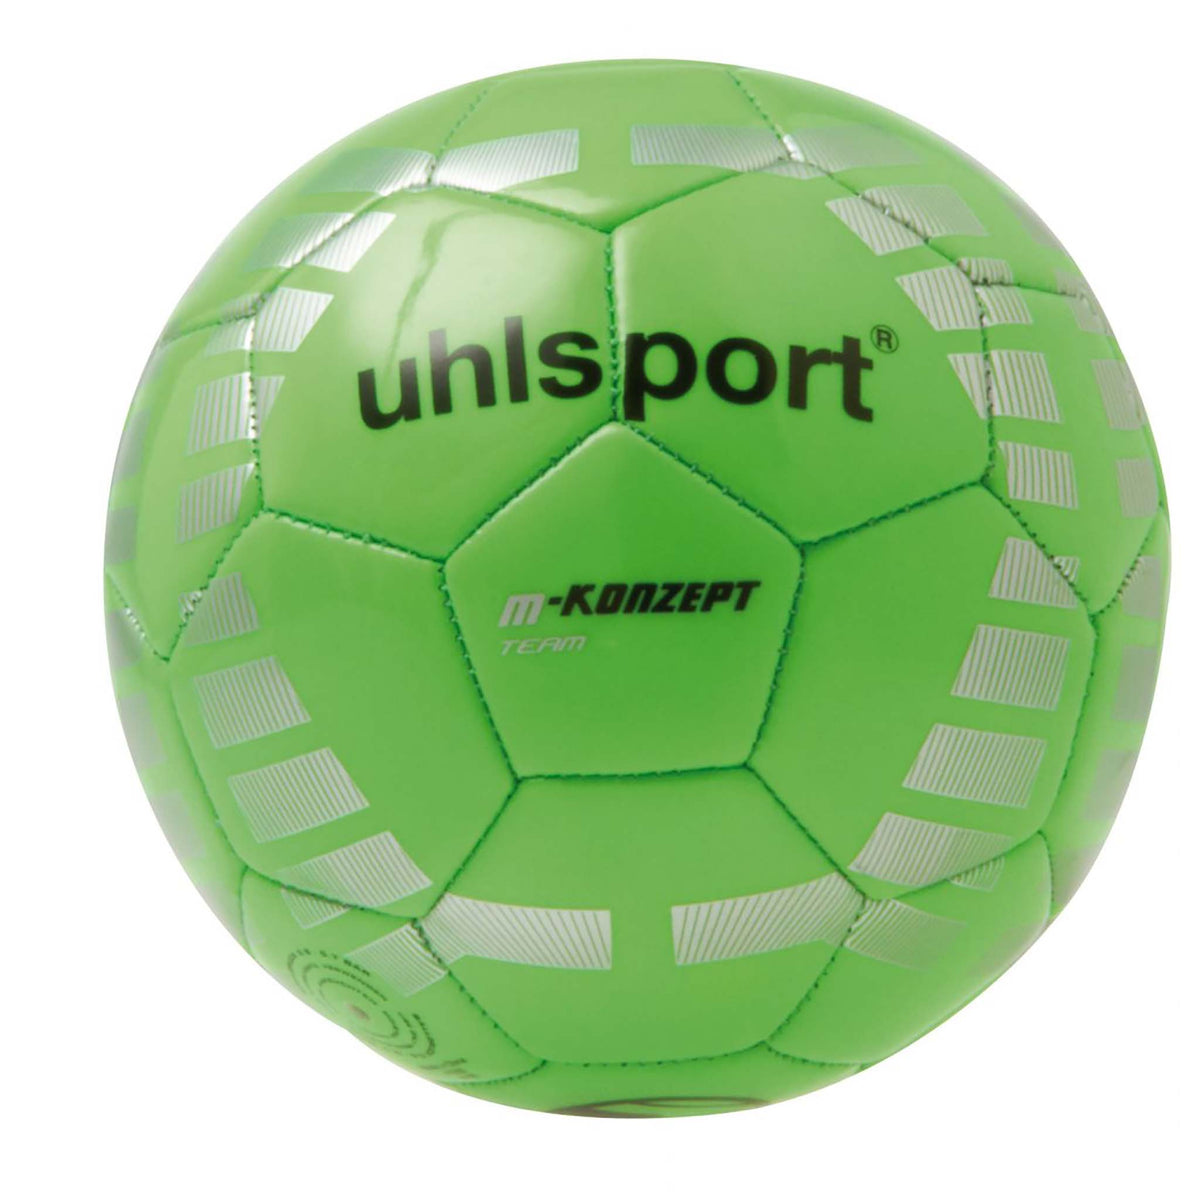 Uhlsport M-konzept Team ballon de soccer vert